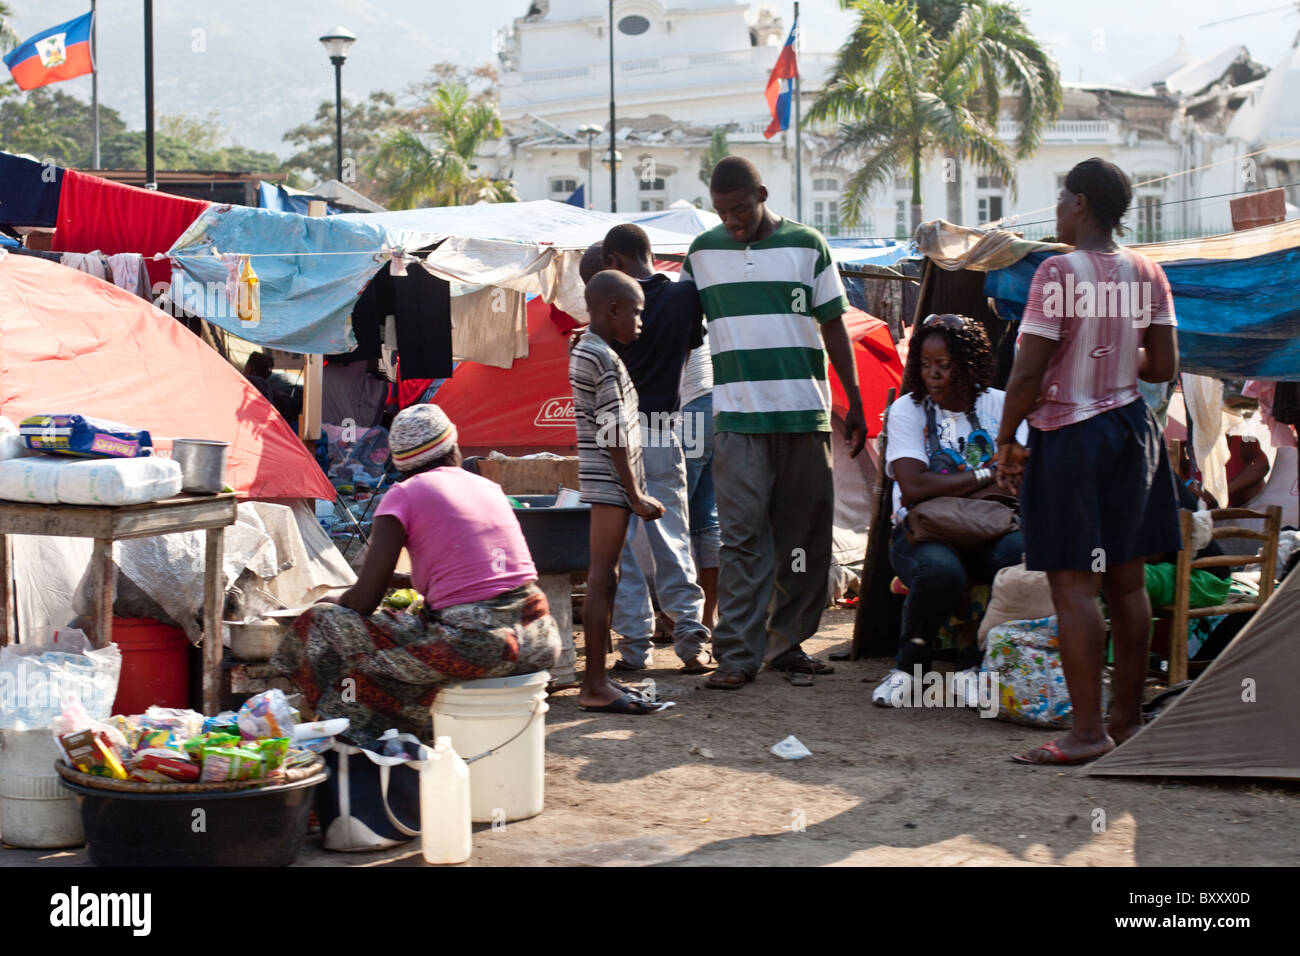 Les personnes déplacées (IDP) camp en face de la ruiné Palais présidentiel dans la capitale Port-au-Prince, Haïti. Banque D'Images